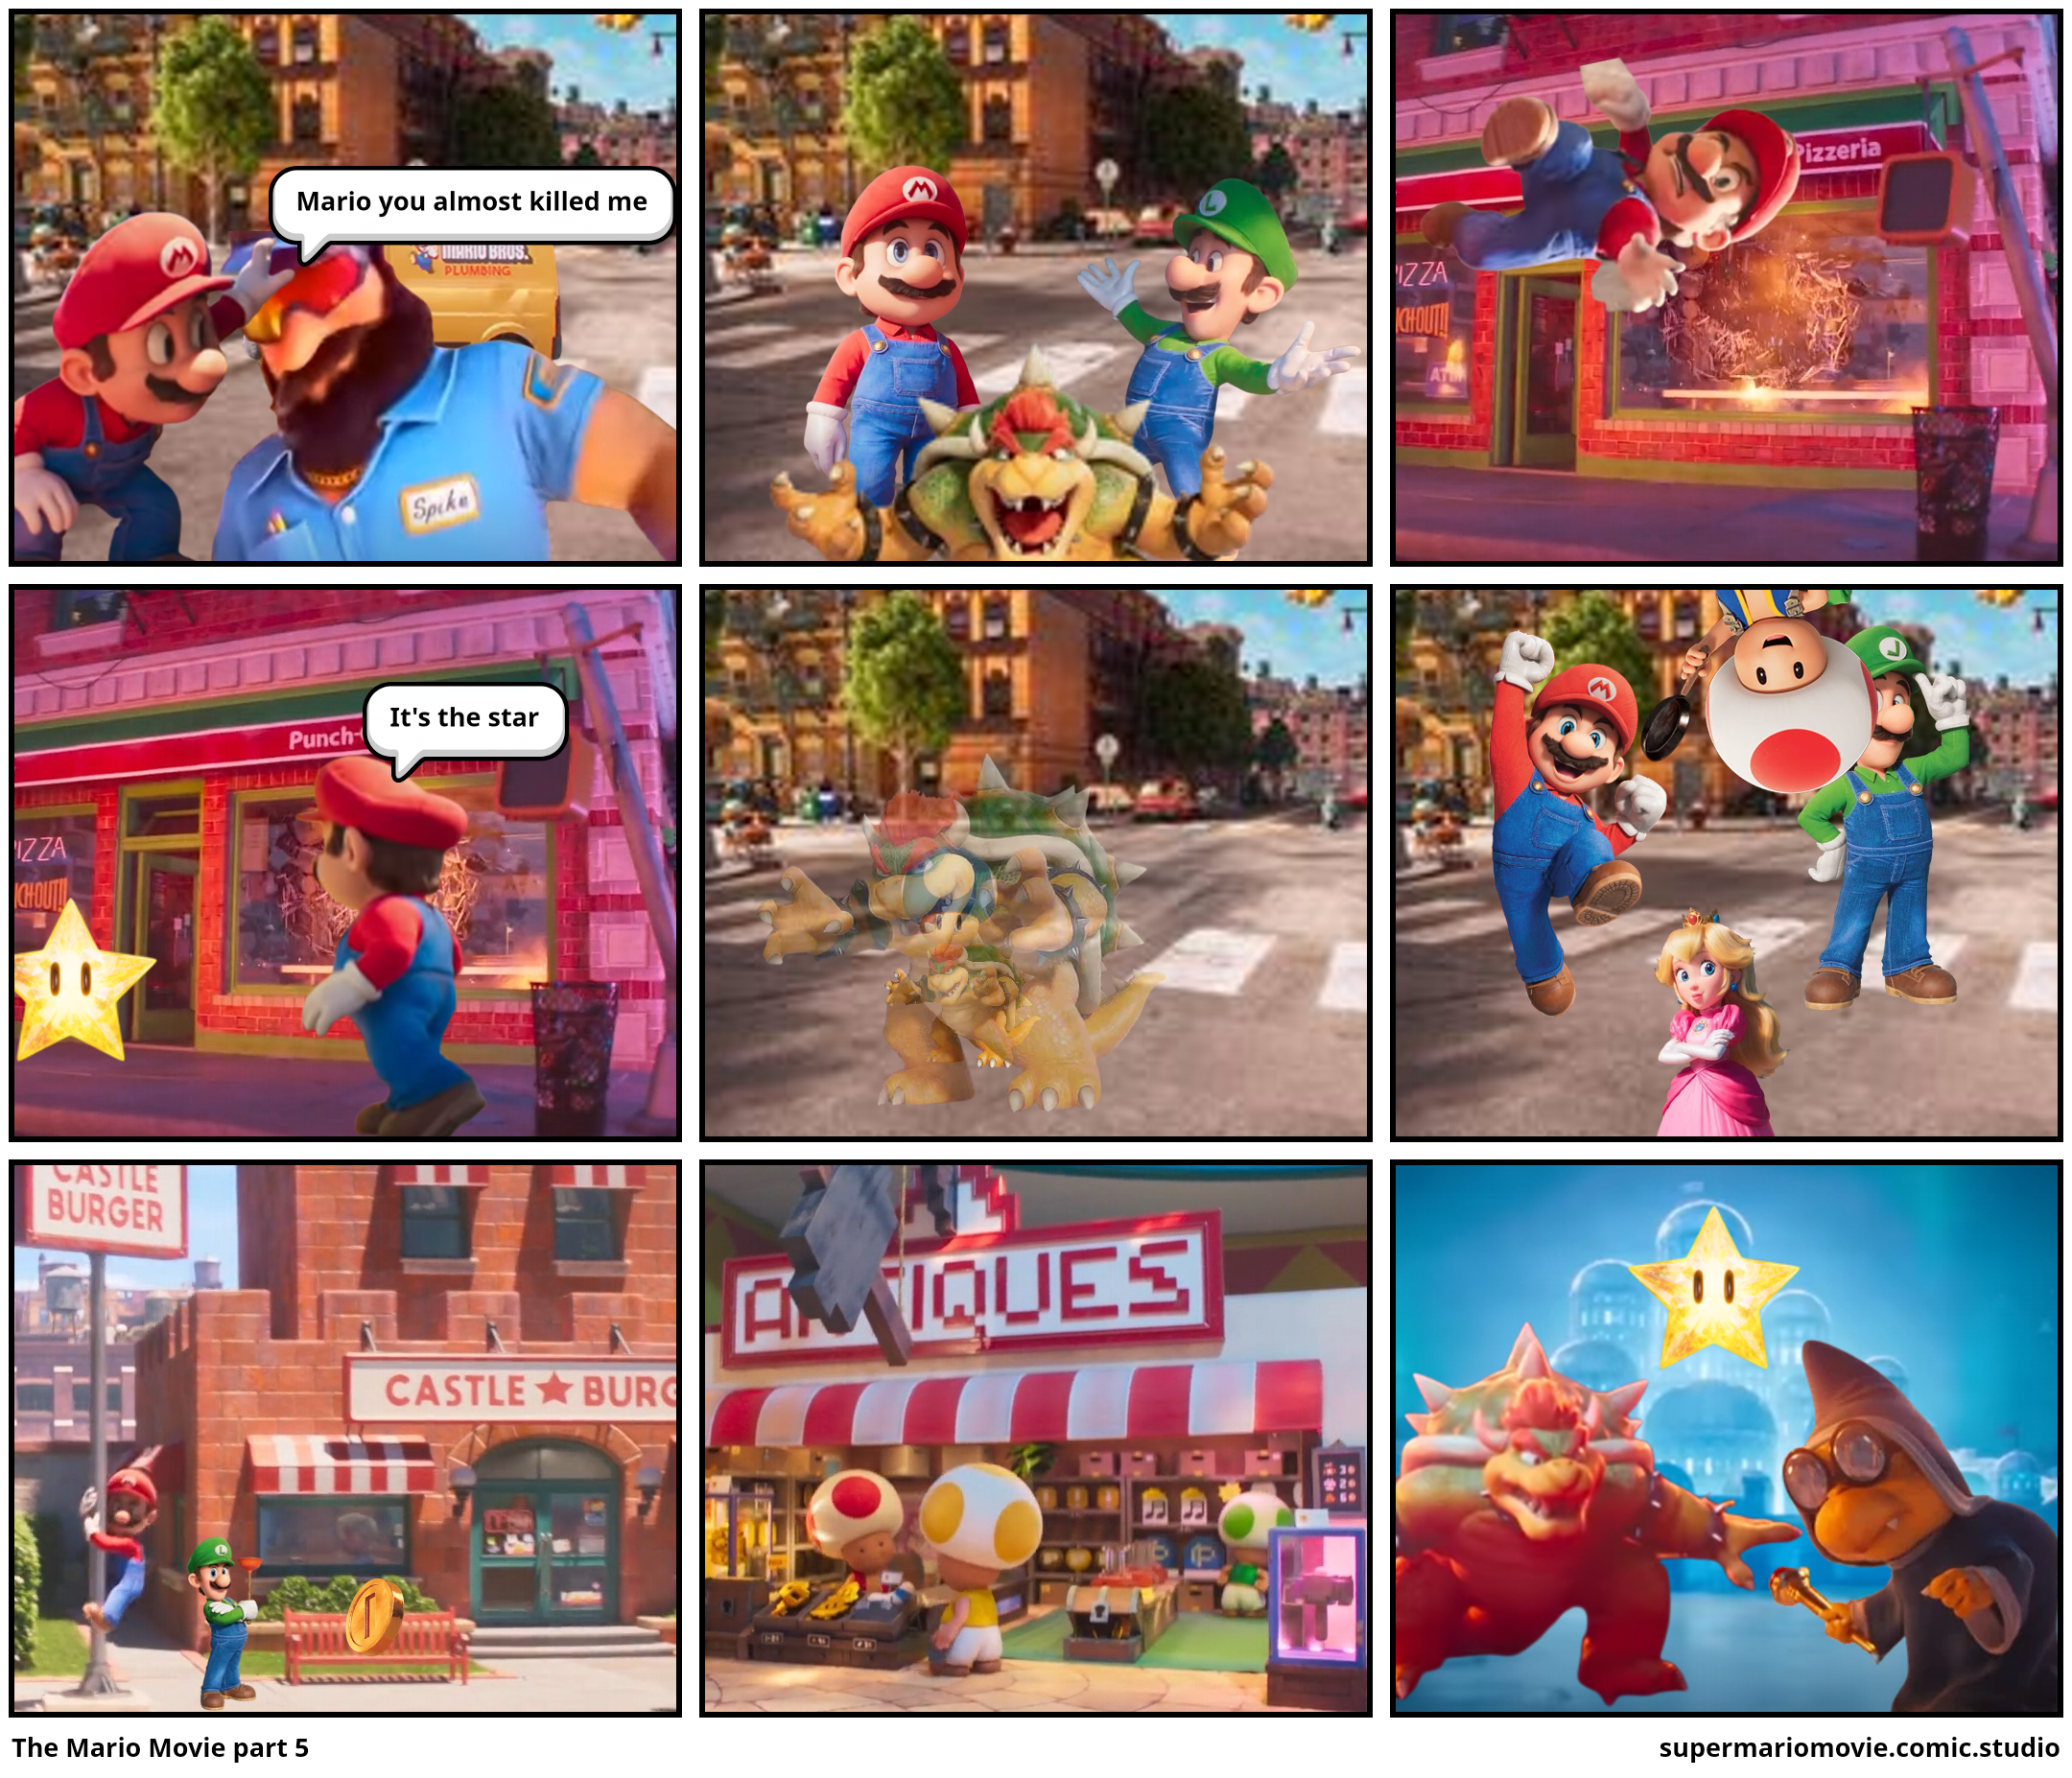 The Mario Movie part 5